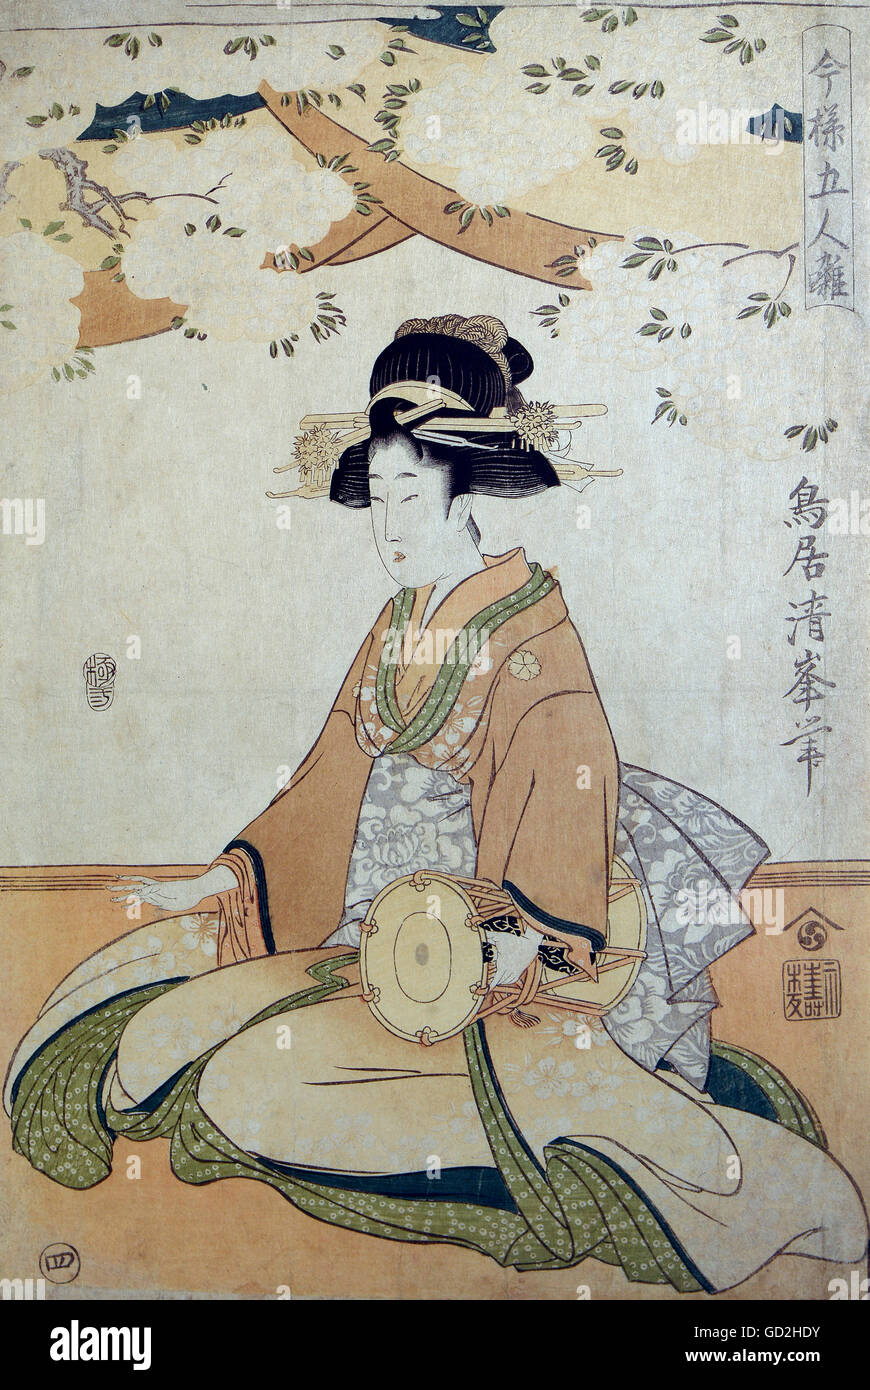 Belle arti, Utamaro, Kitagawa (1753 - 1806), grafica "Geisha inginocchiato con tamburo a forma di clessidra", fine XVIII secolo, colore xilografia, collezione privata, artista del diritto d'autore non deve essere cancellata Foto Stock